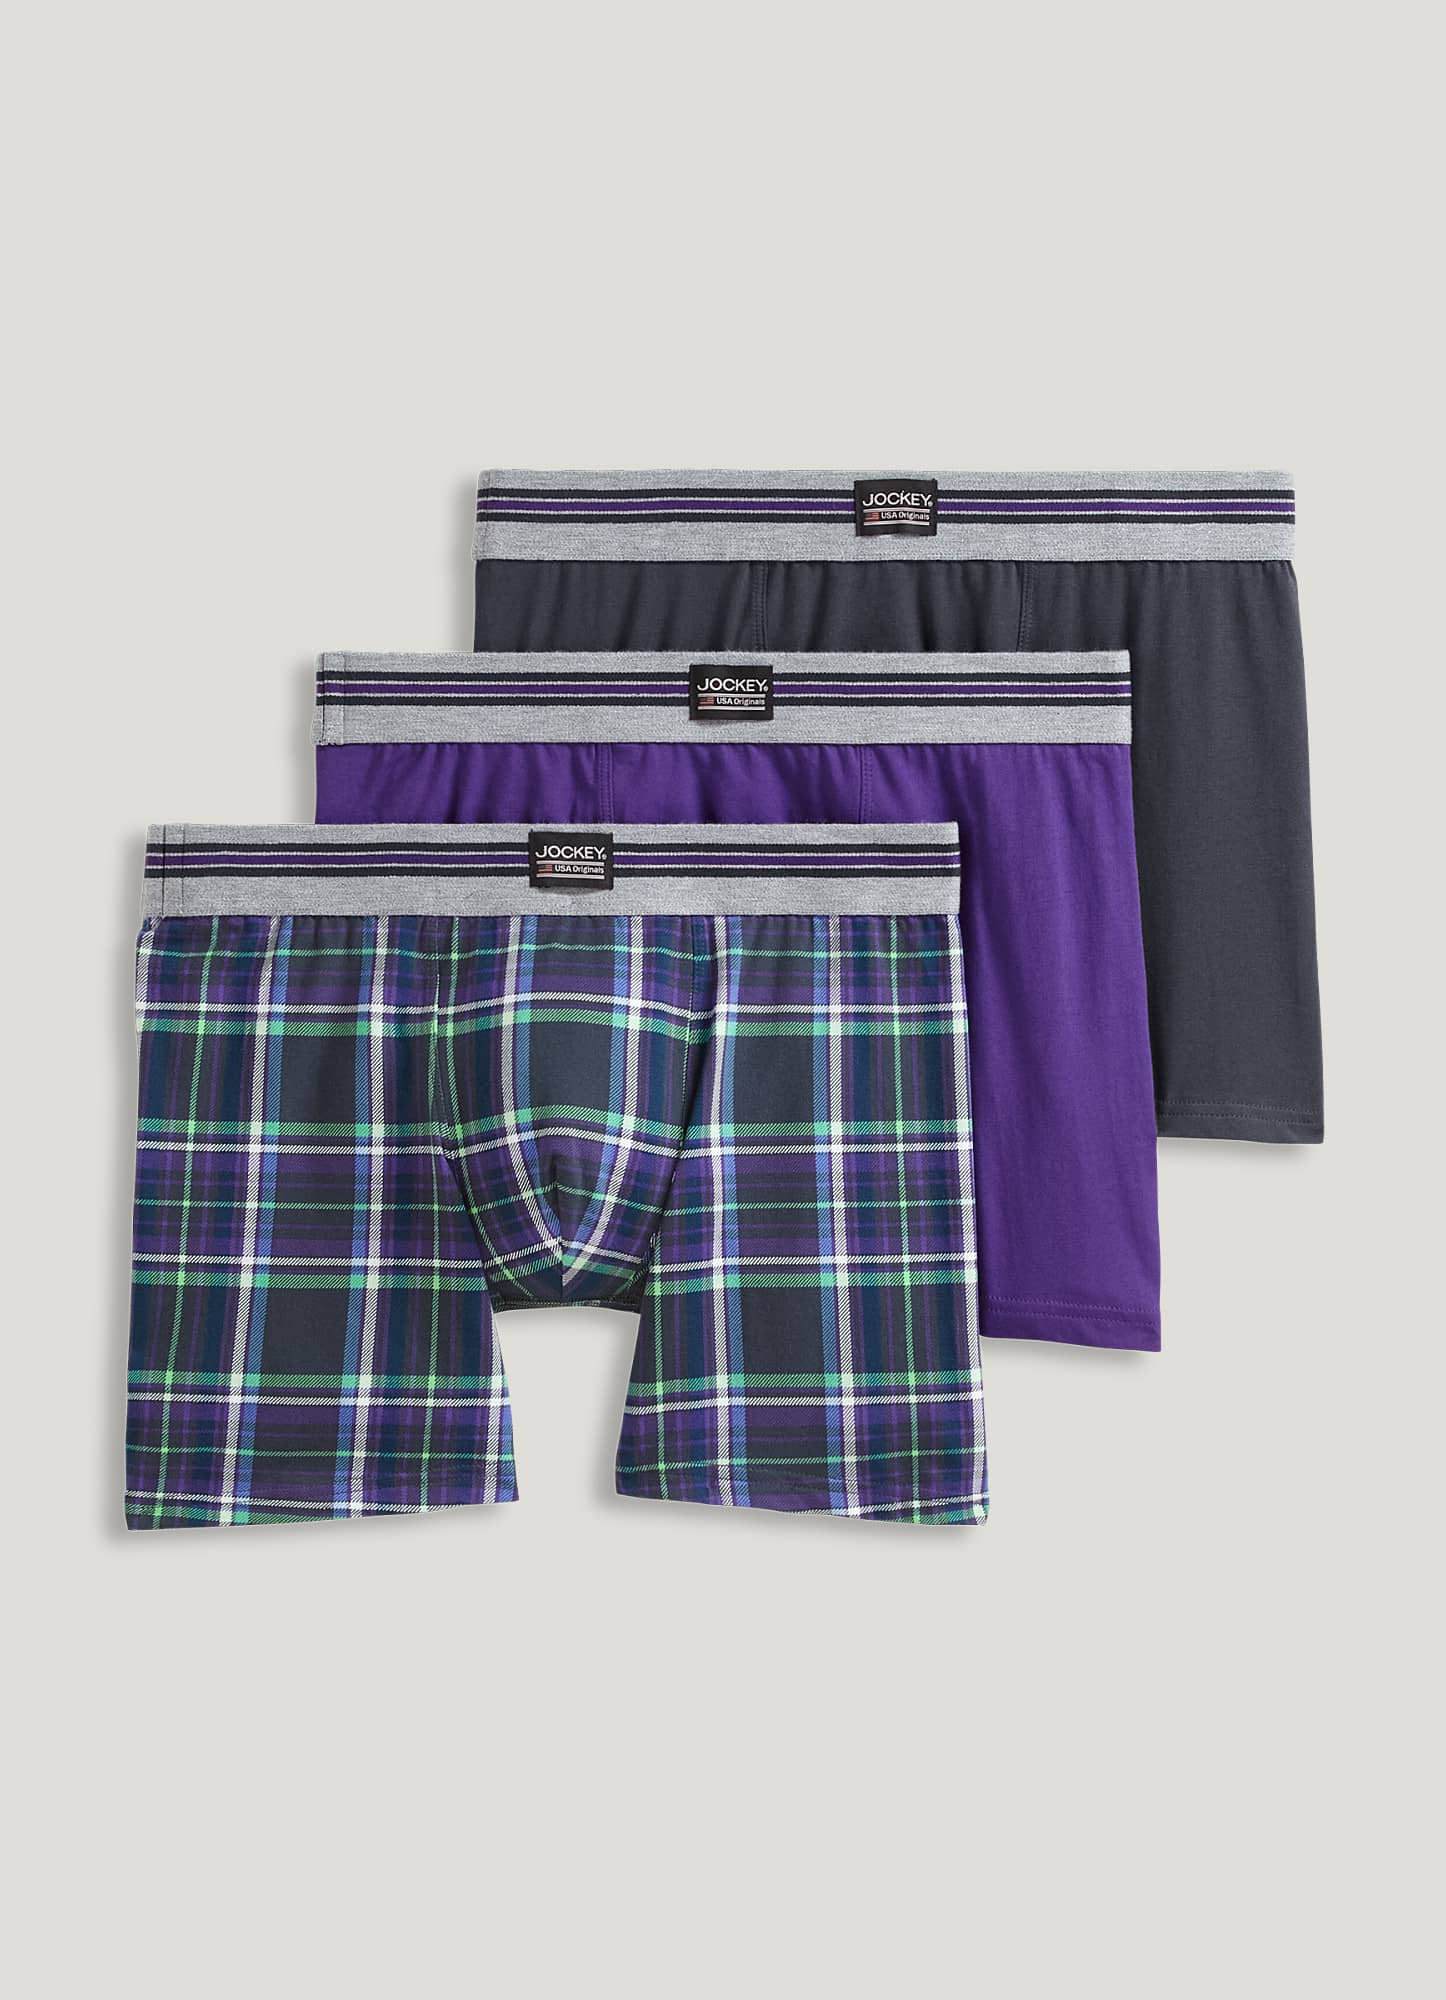 BOYS BRIEF, Kids Underwear for BOYS, Premium Quality [95% Cotton 5%  Spandex] (5-6 Piece/Pack)